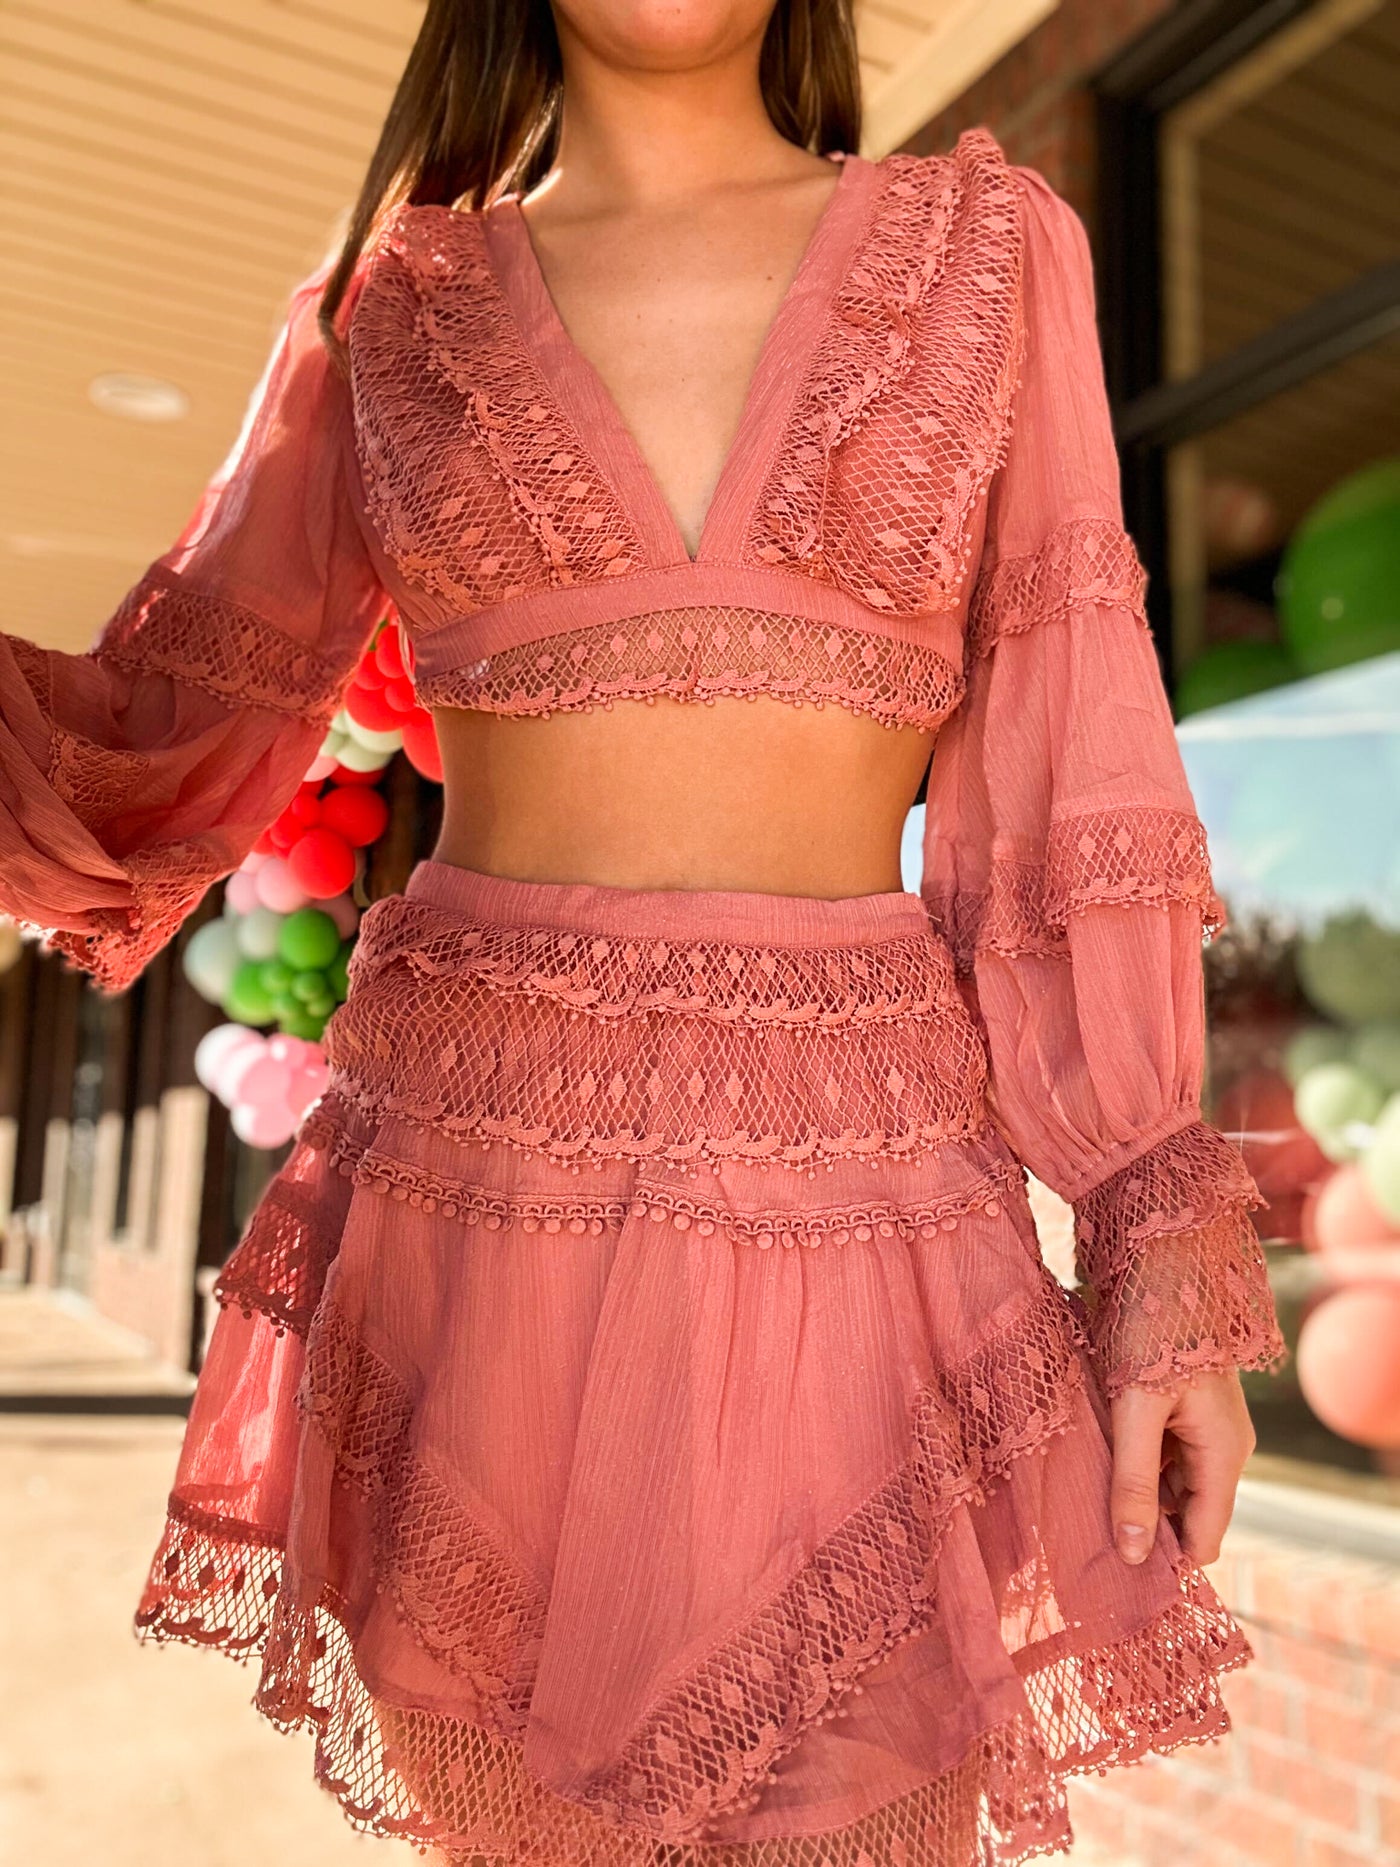 Tickled Pink Blouse & Skirt Set-170 - DRESSES / ROMPERS / SETS-ROSE VELVET-[option4]-[option5]-[option6]-Leather & Lace Boutique Shop